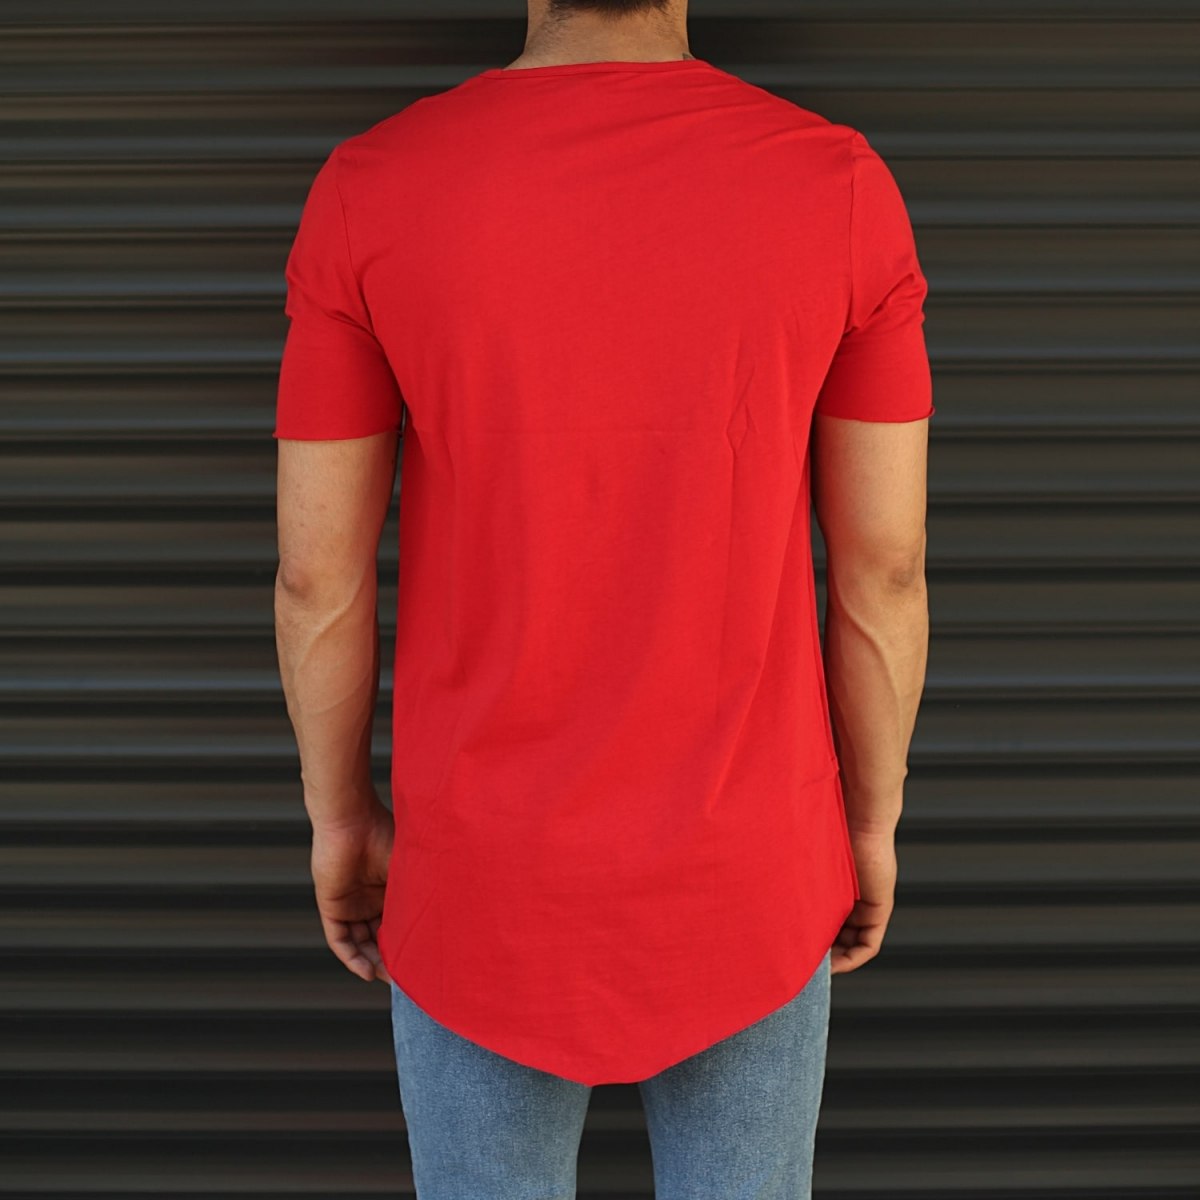 Men's Fitted Cross Zipper Tall T-Shirt Red